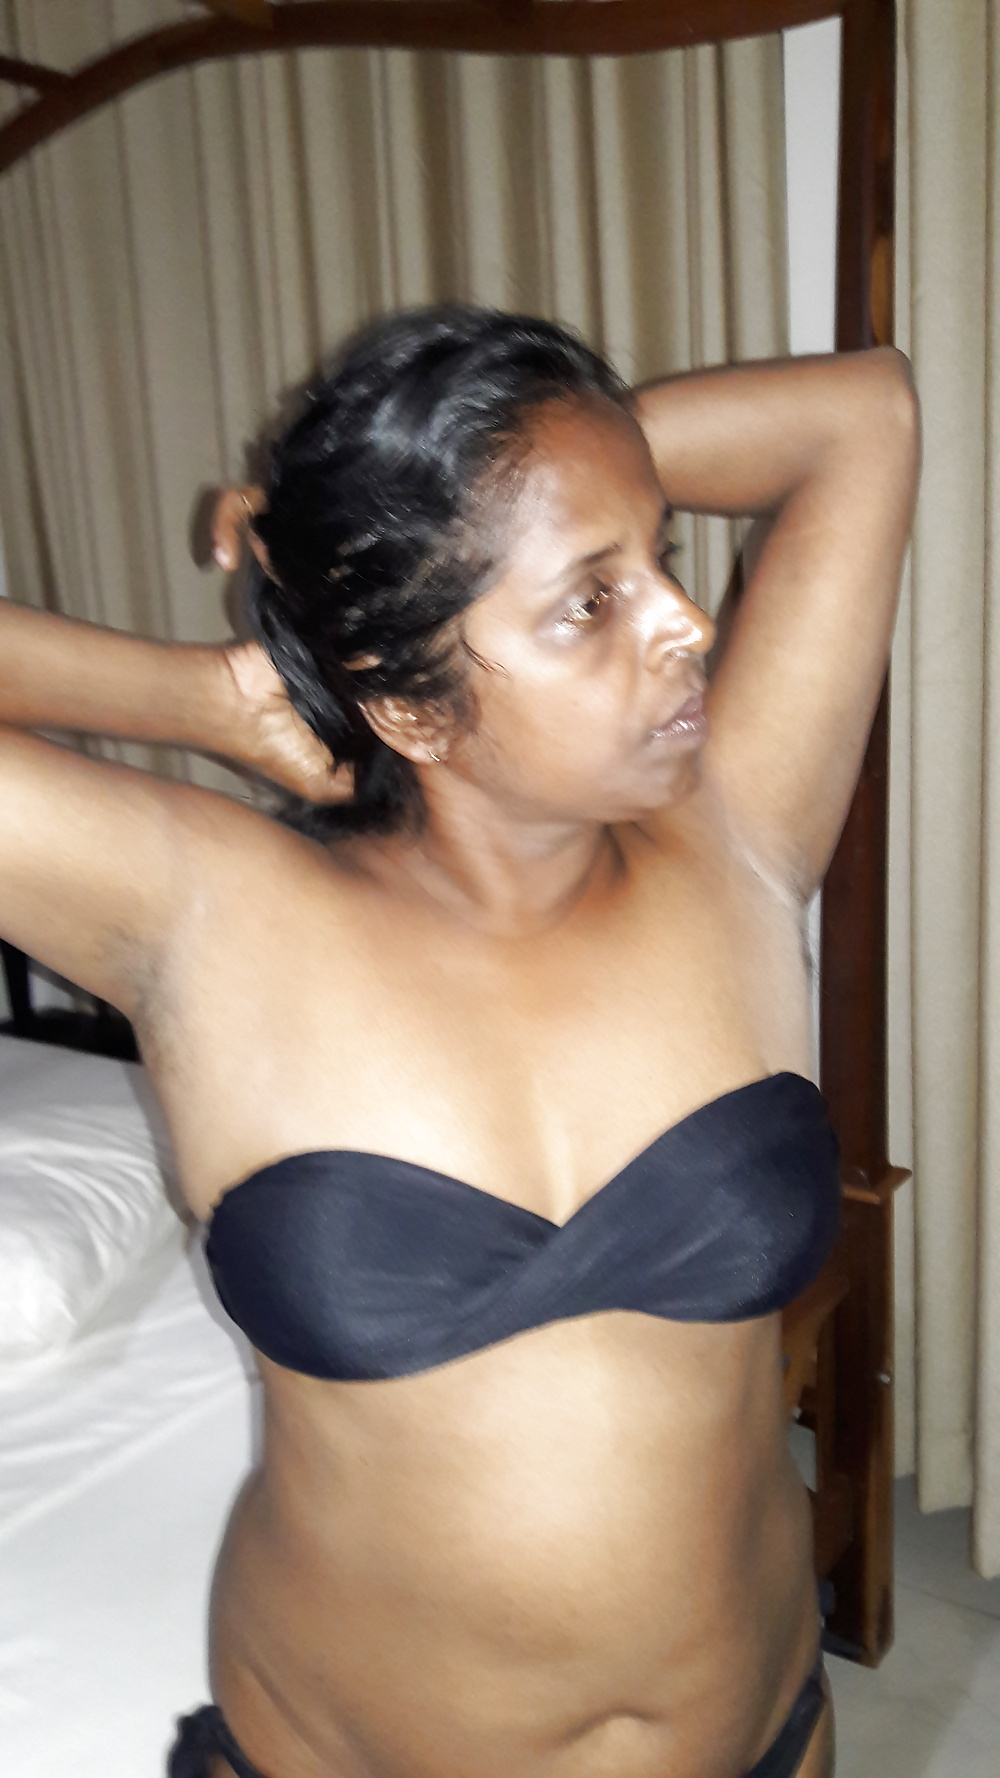 tamil wife nude selfie